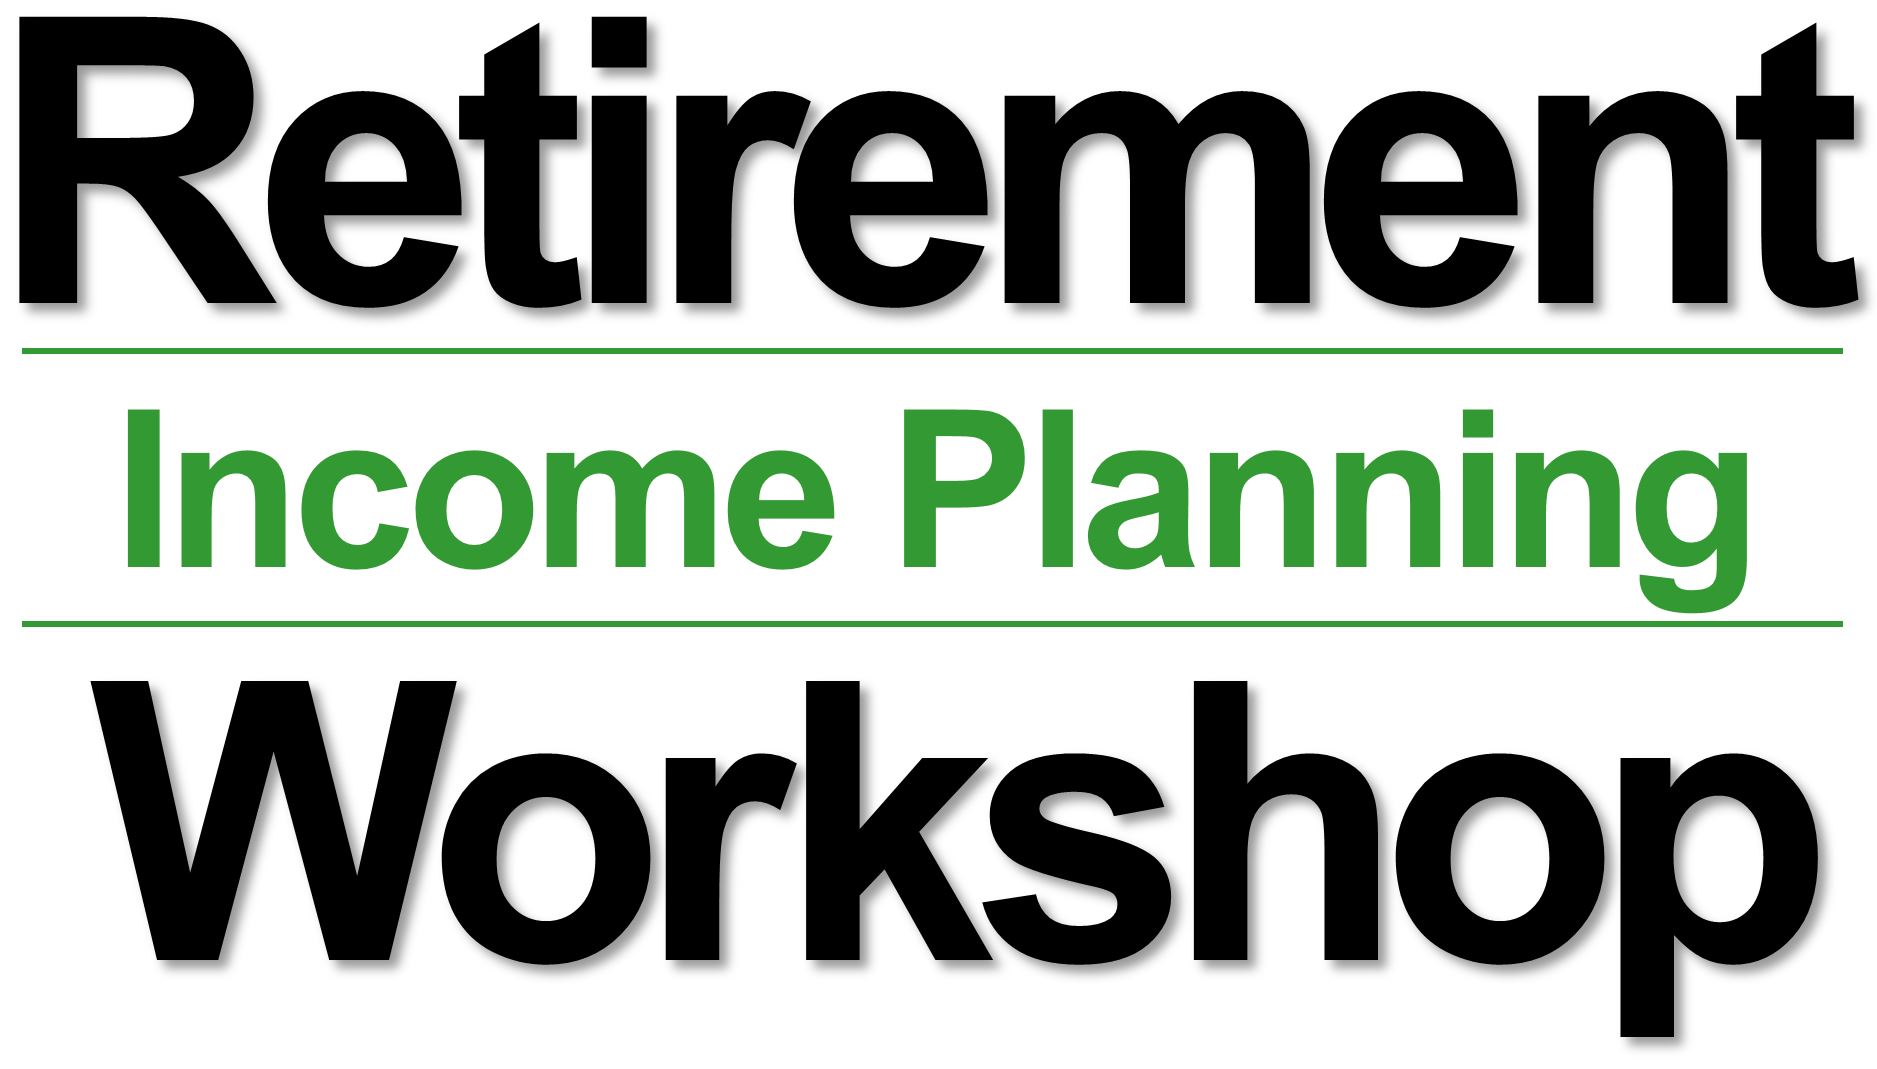 Retirement Income Planning Workshop LOGO v2 7-2015